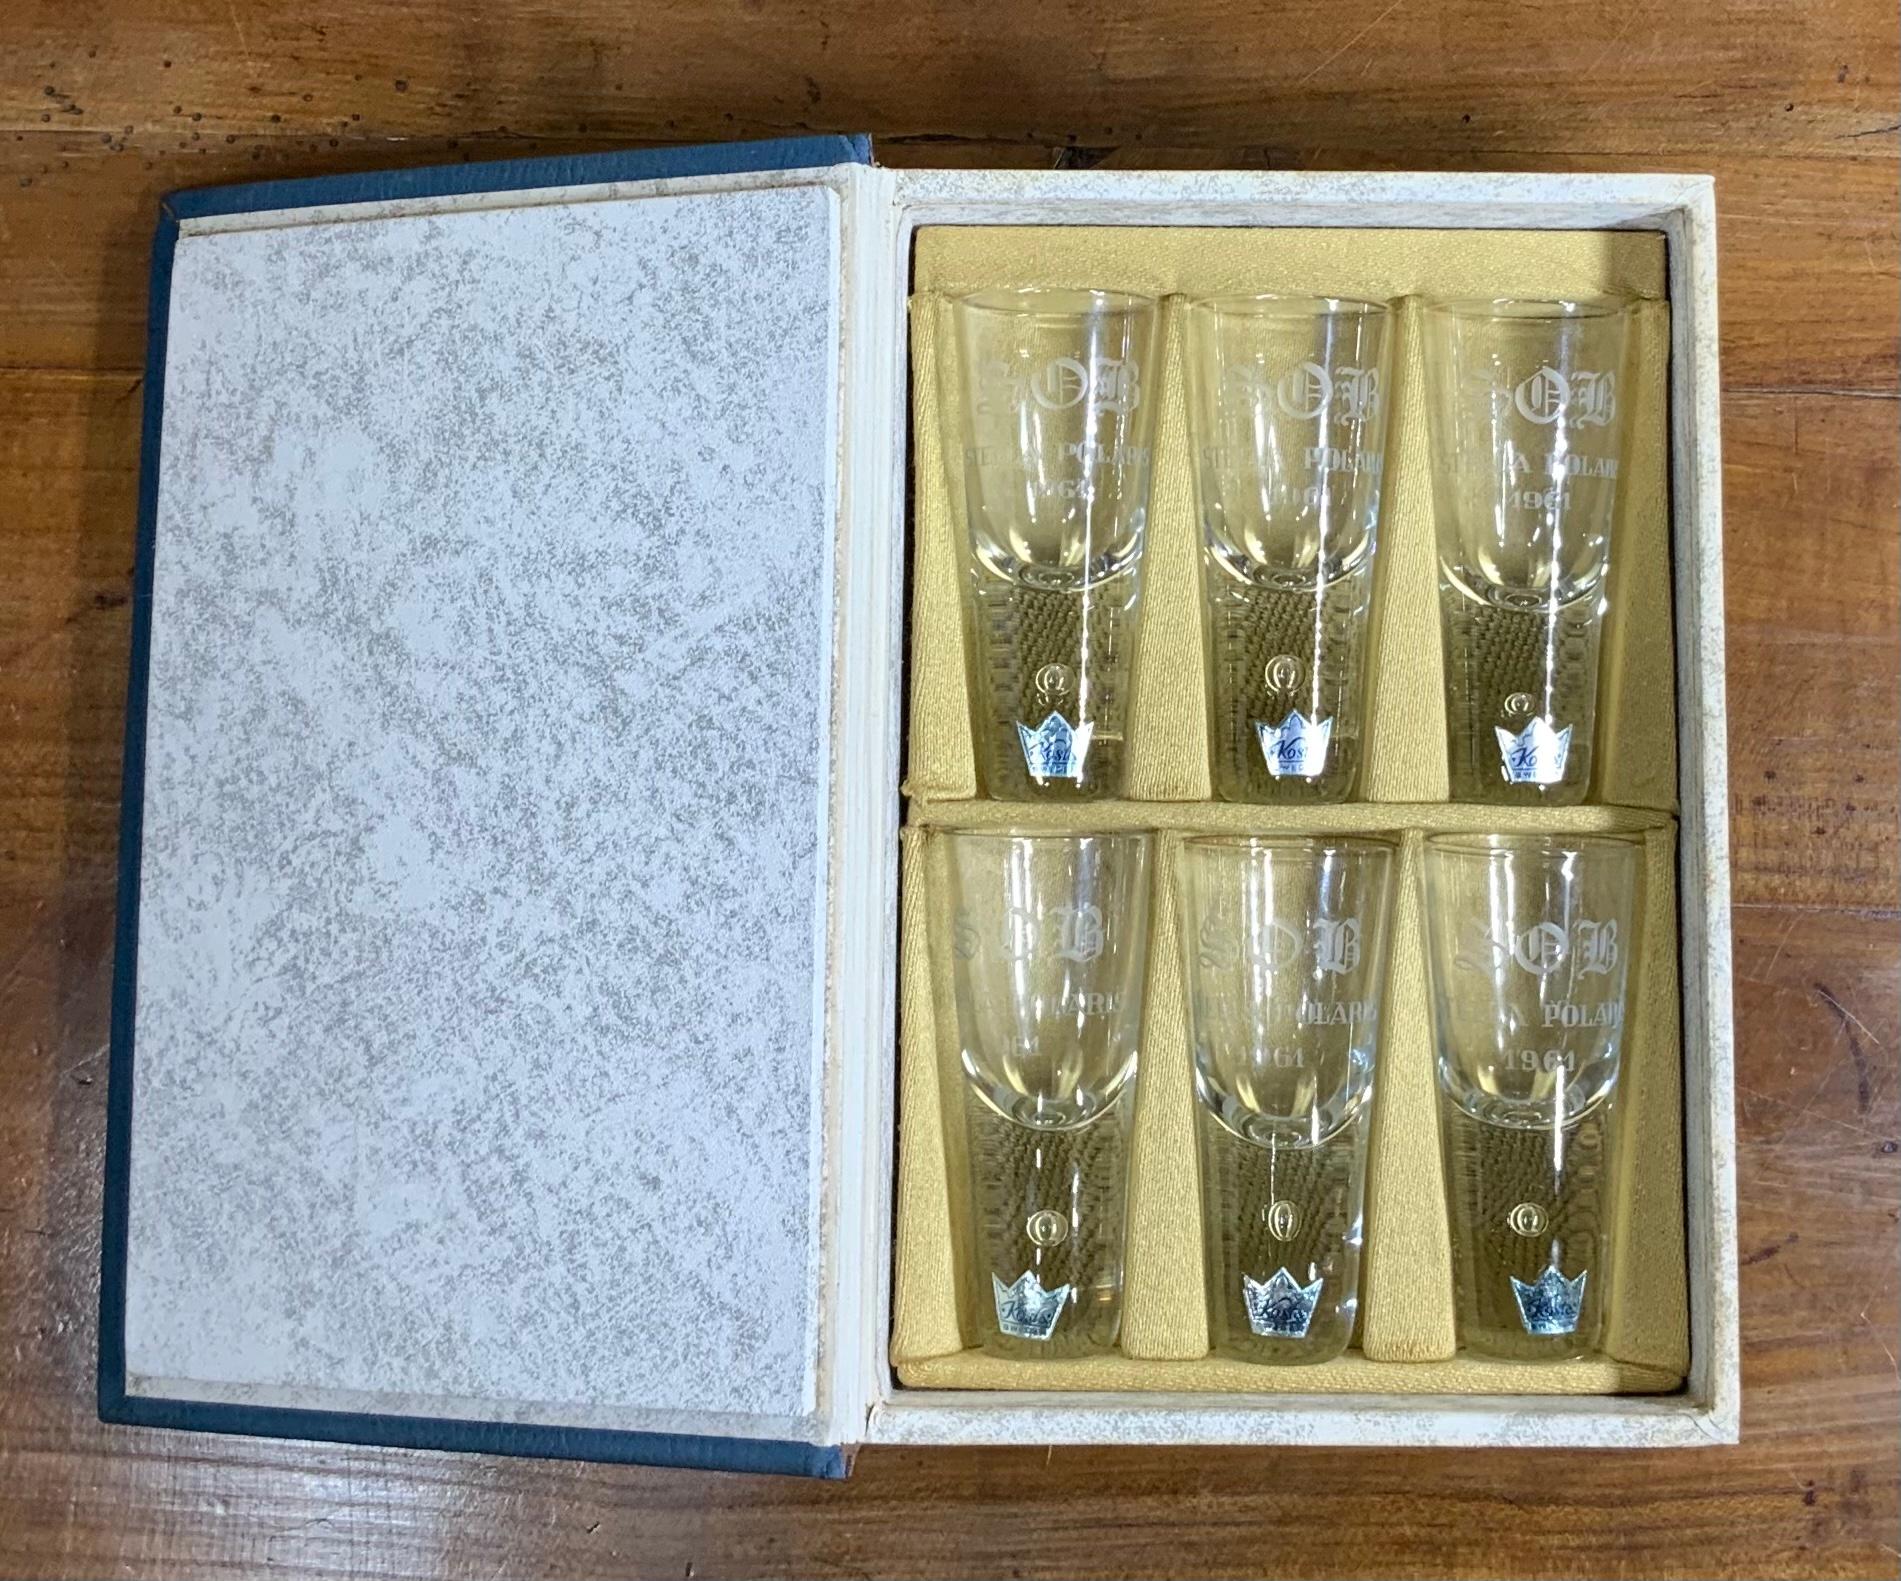 Schöne sechs Wodka Schnapsgläser von Stella Polaris Schweden Hersteller 1961 gemacht.
Sehr guter Zustand mit dem Original-Buch-Box kommen.
Box Größe ist: 9. 